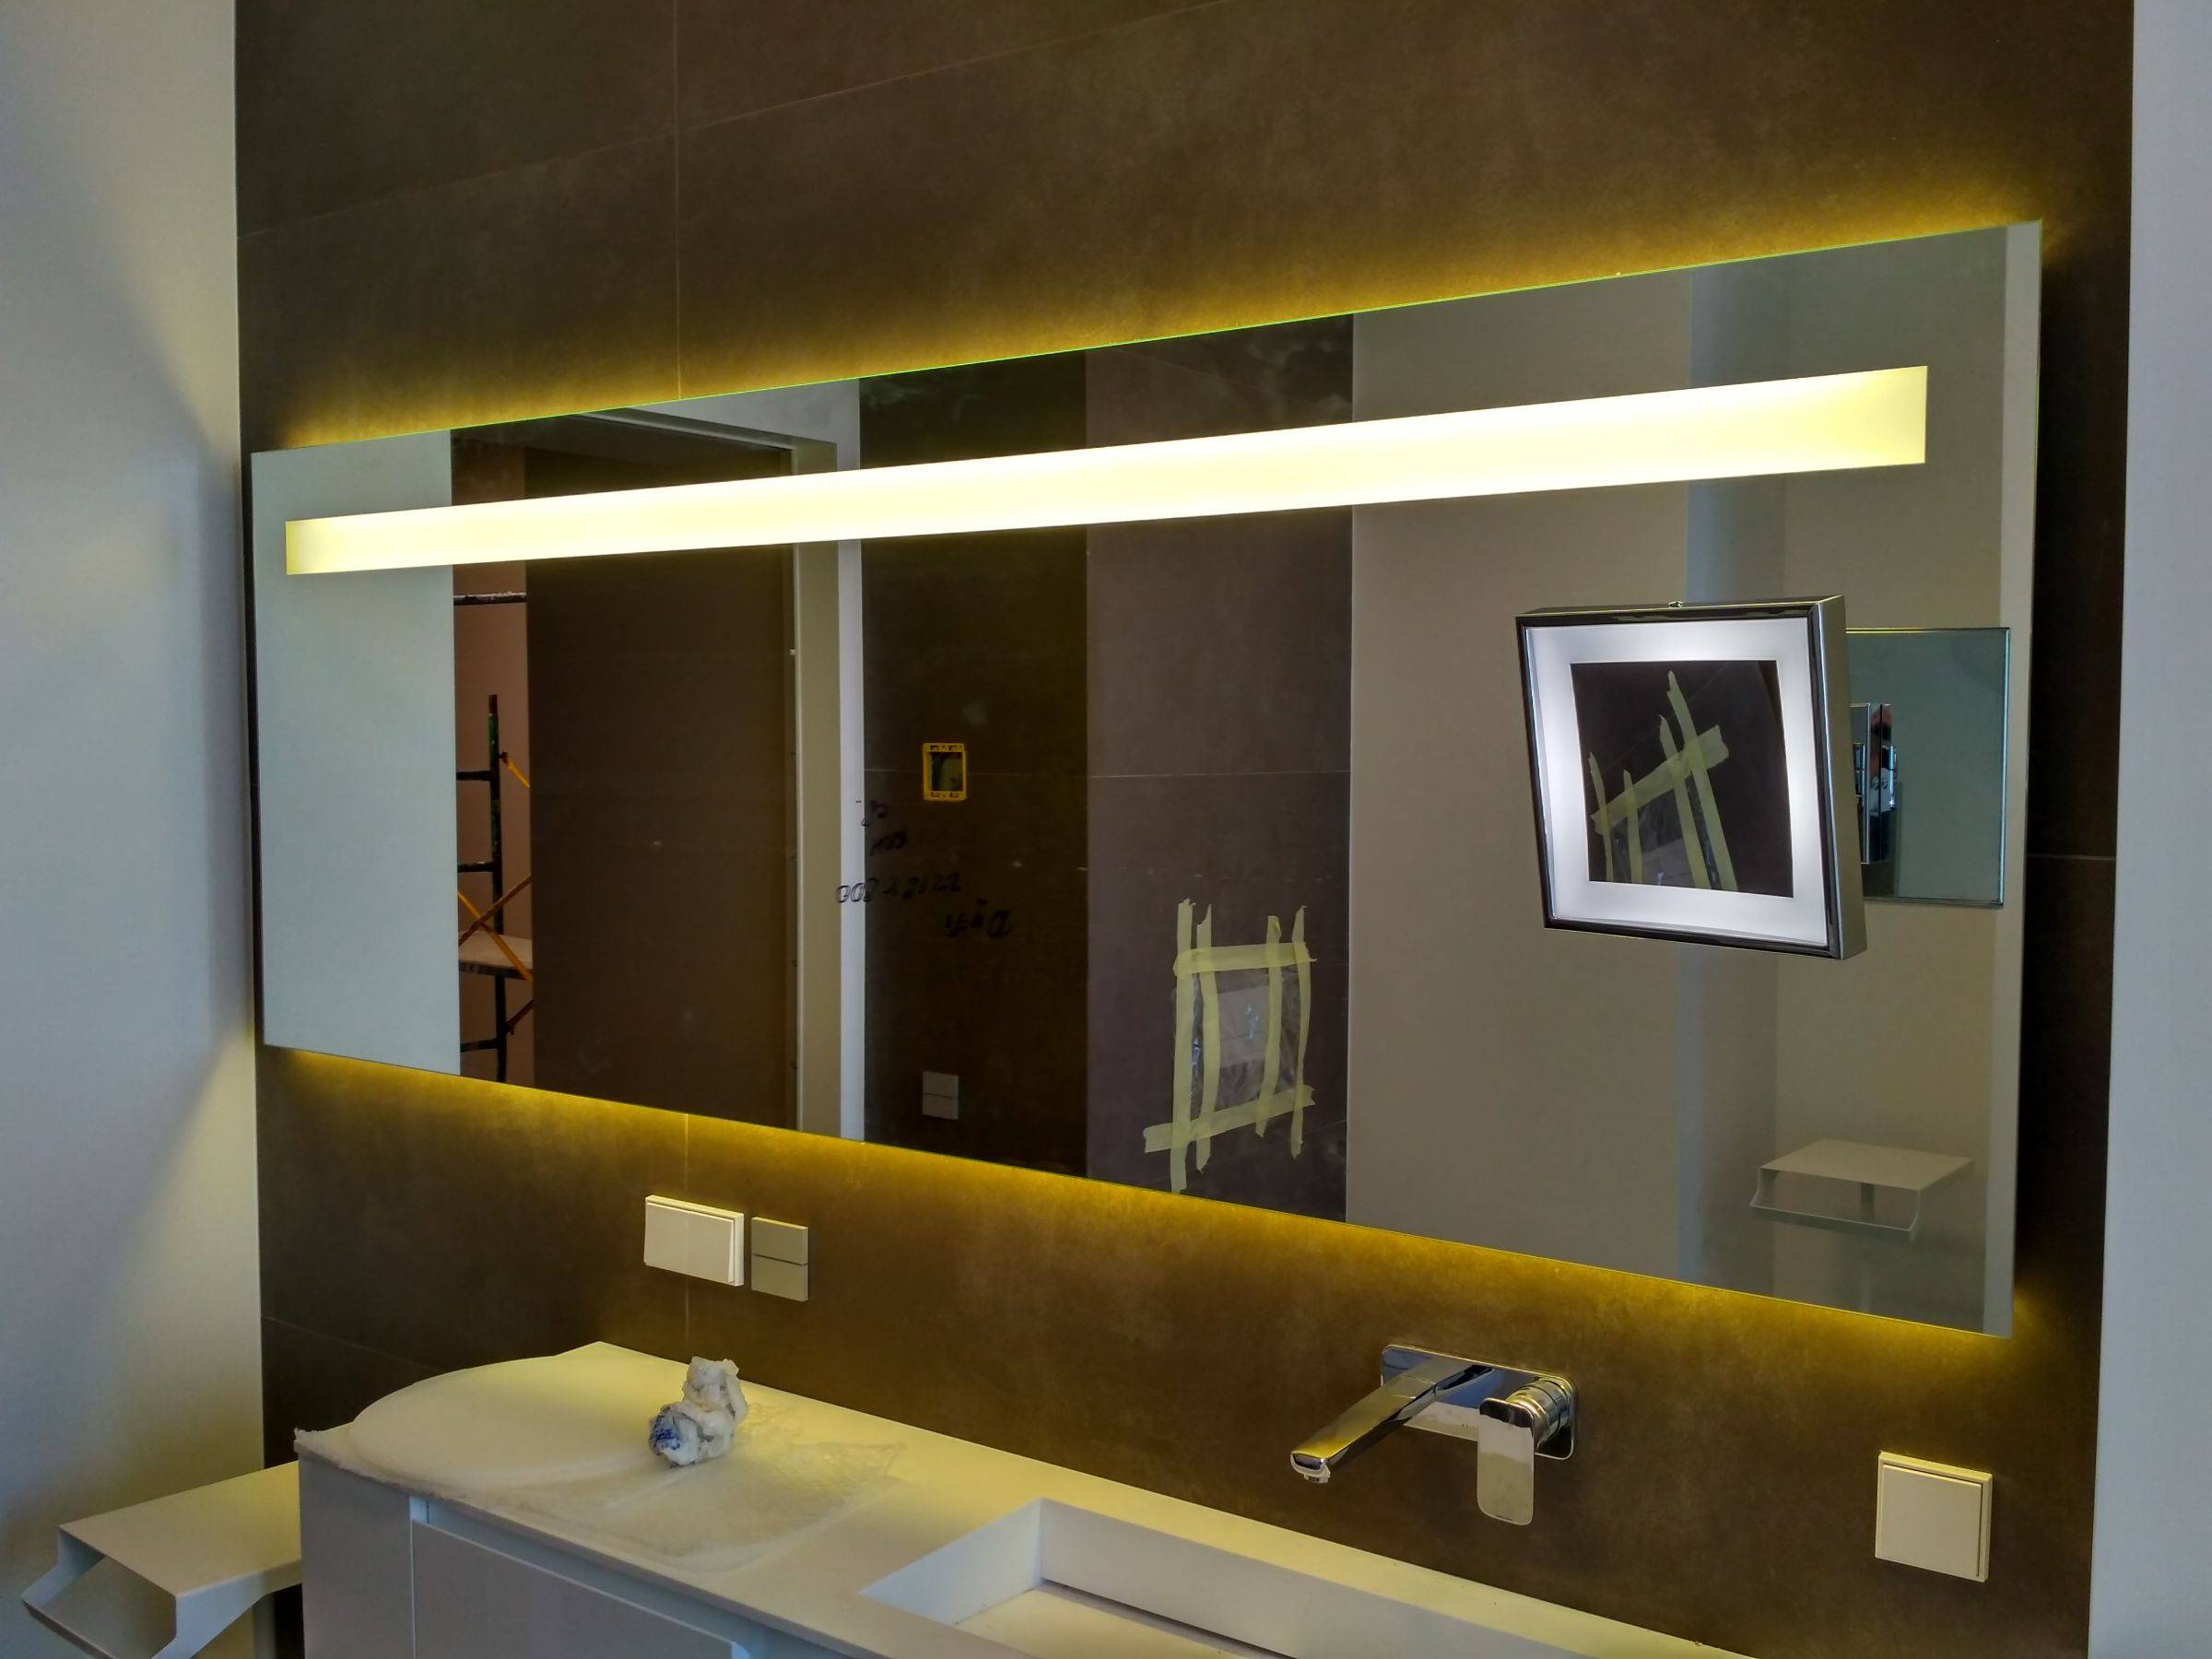 Подсветка зеркала в ванной: лучшие идеи и способы | онлайн-журнал о ремонте и дизайне